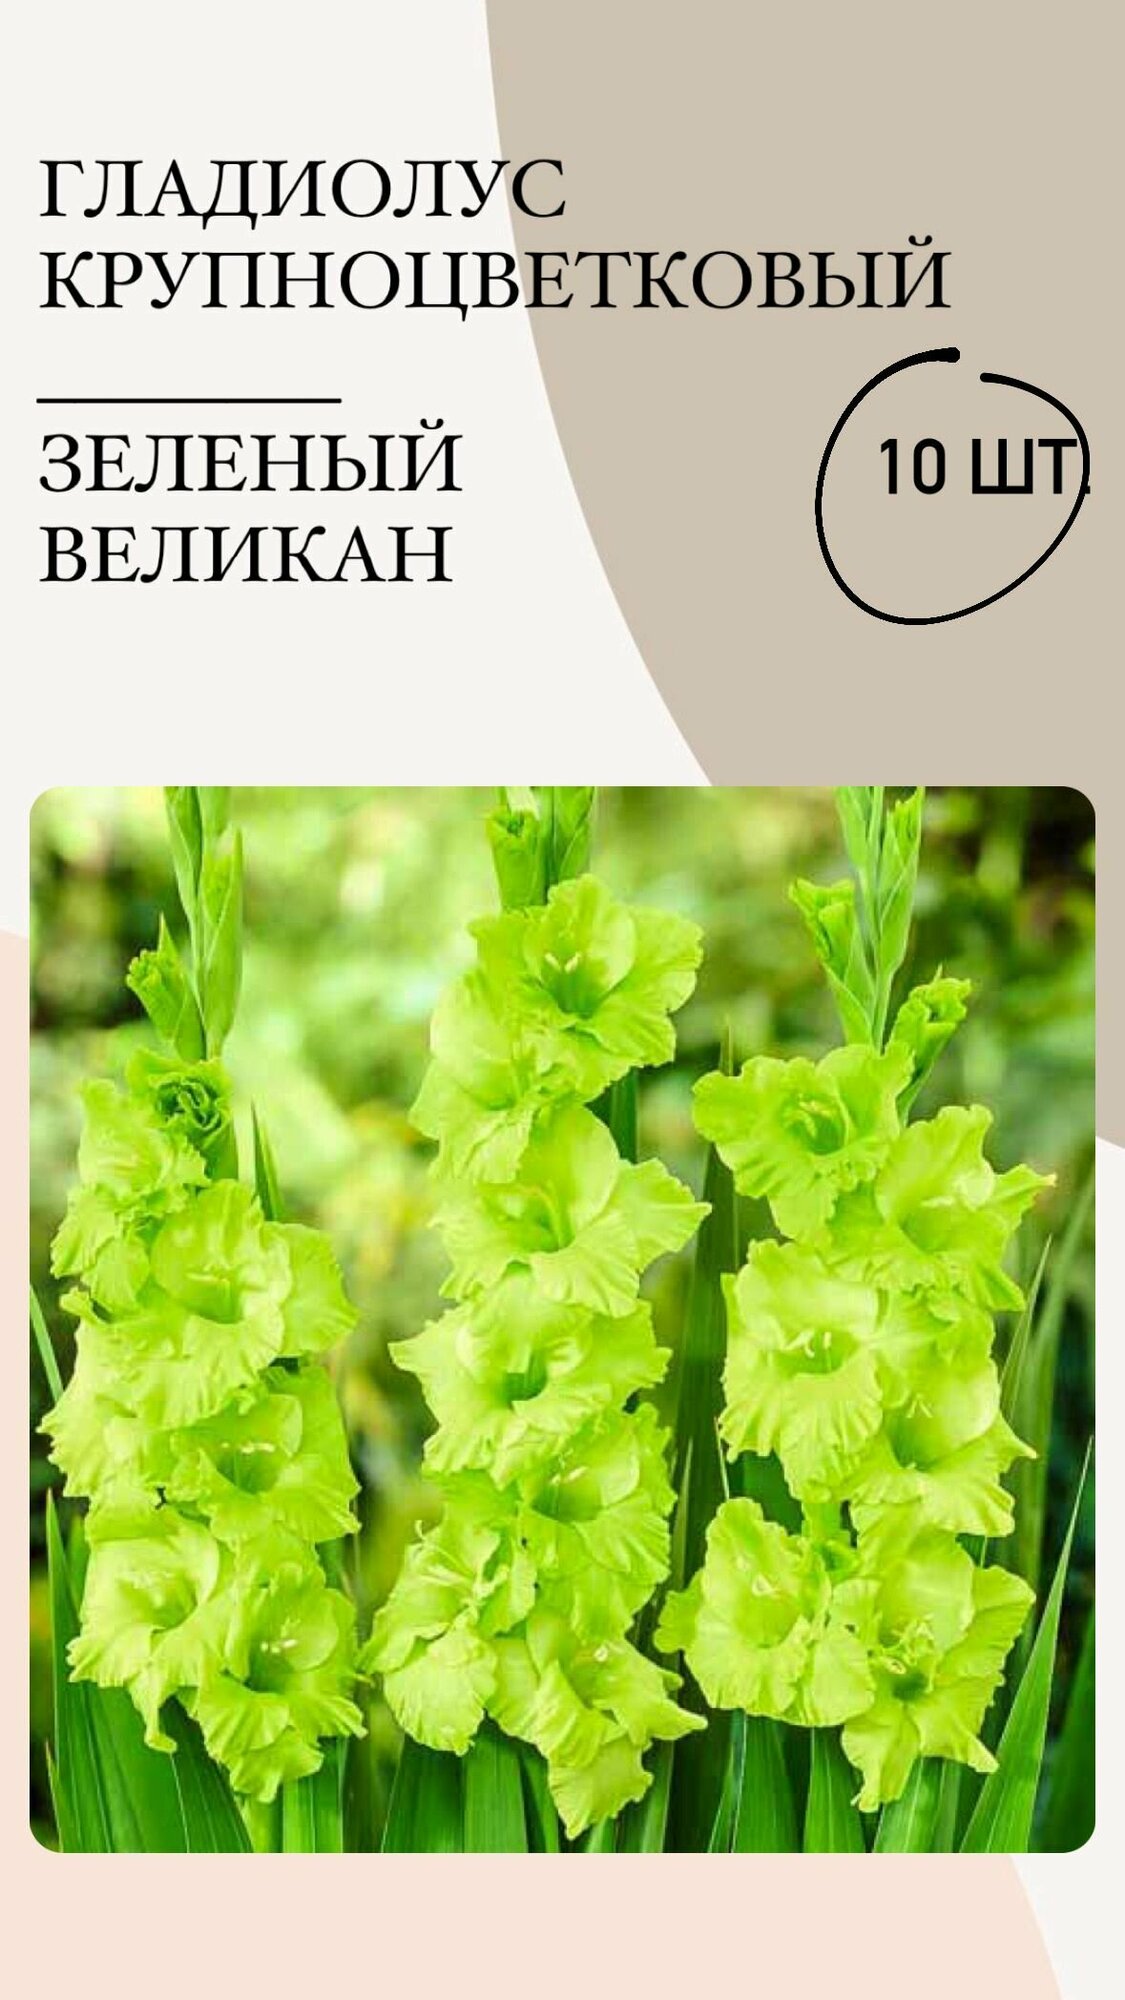 Гладиолус крупноцветковый Зеленый Великан, луковицы многолетних цветов